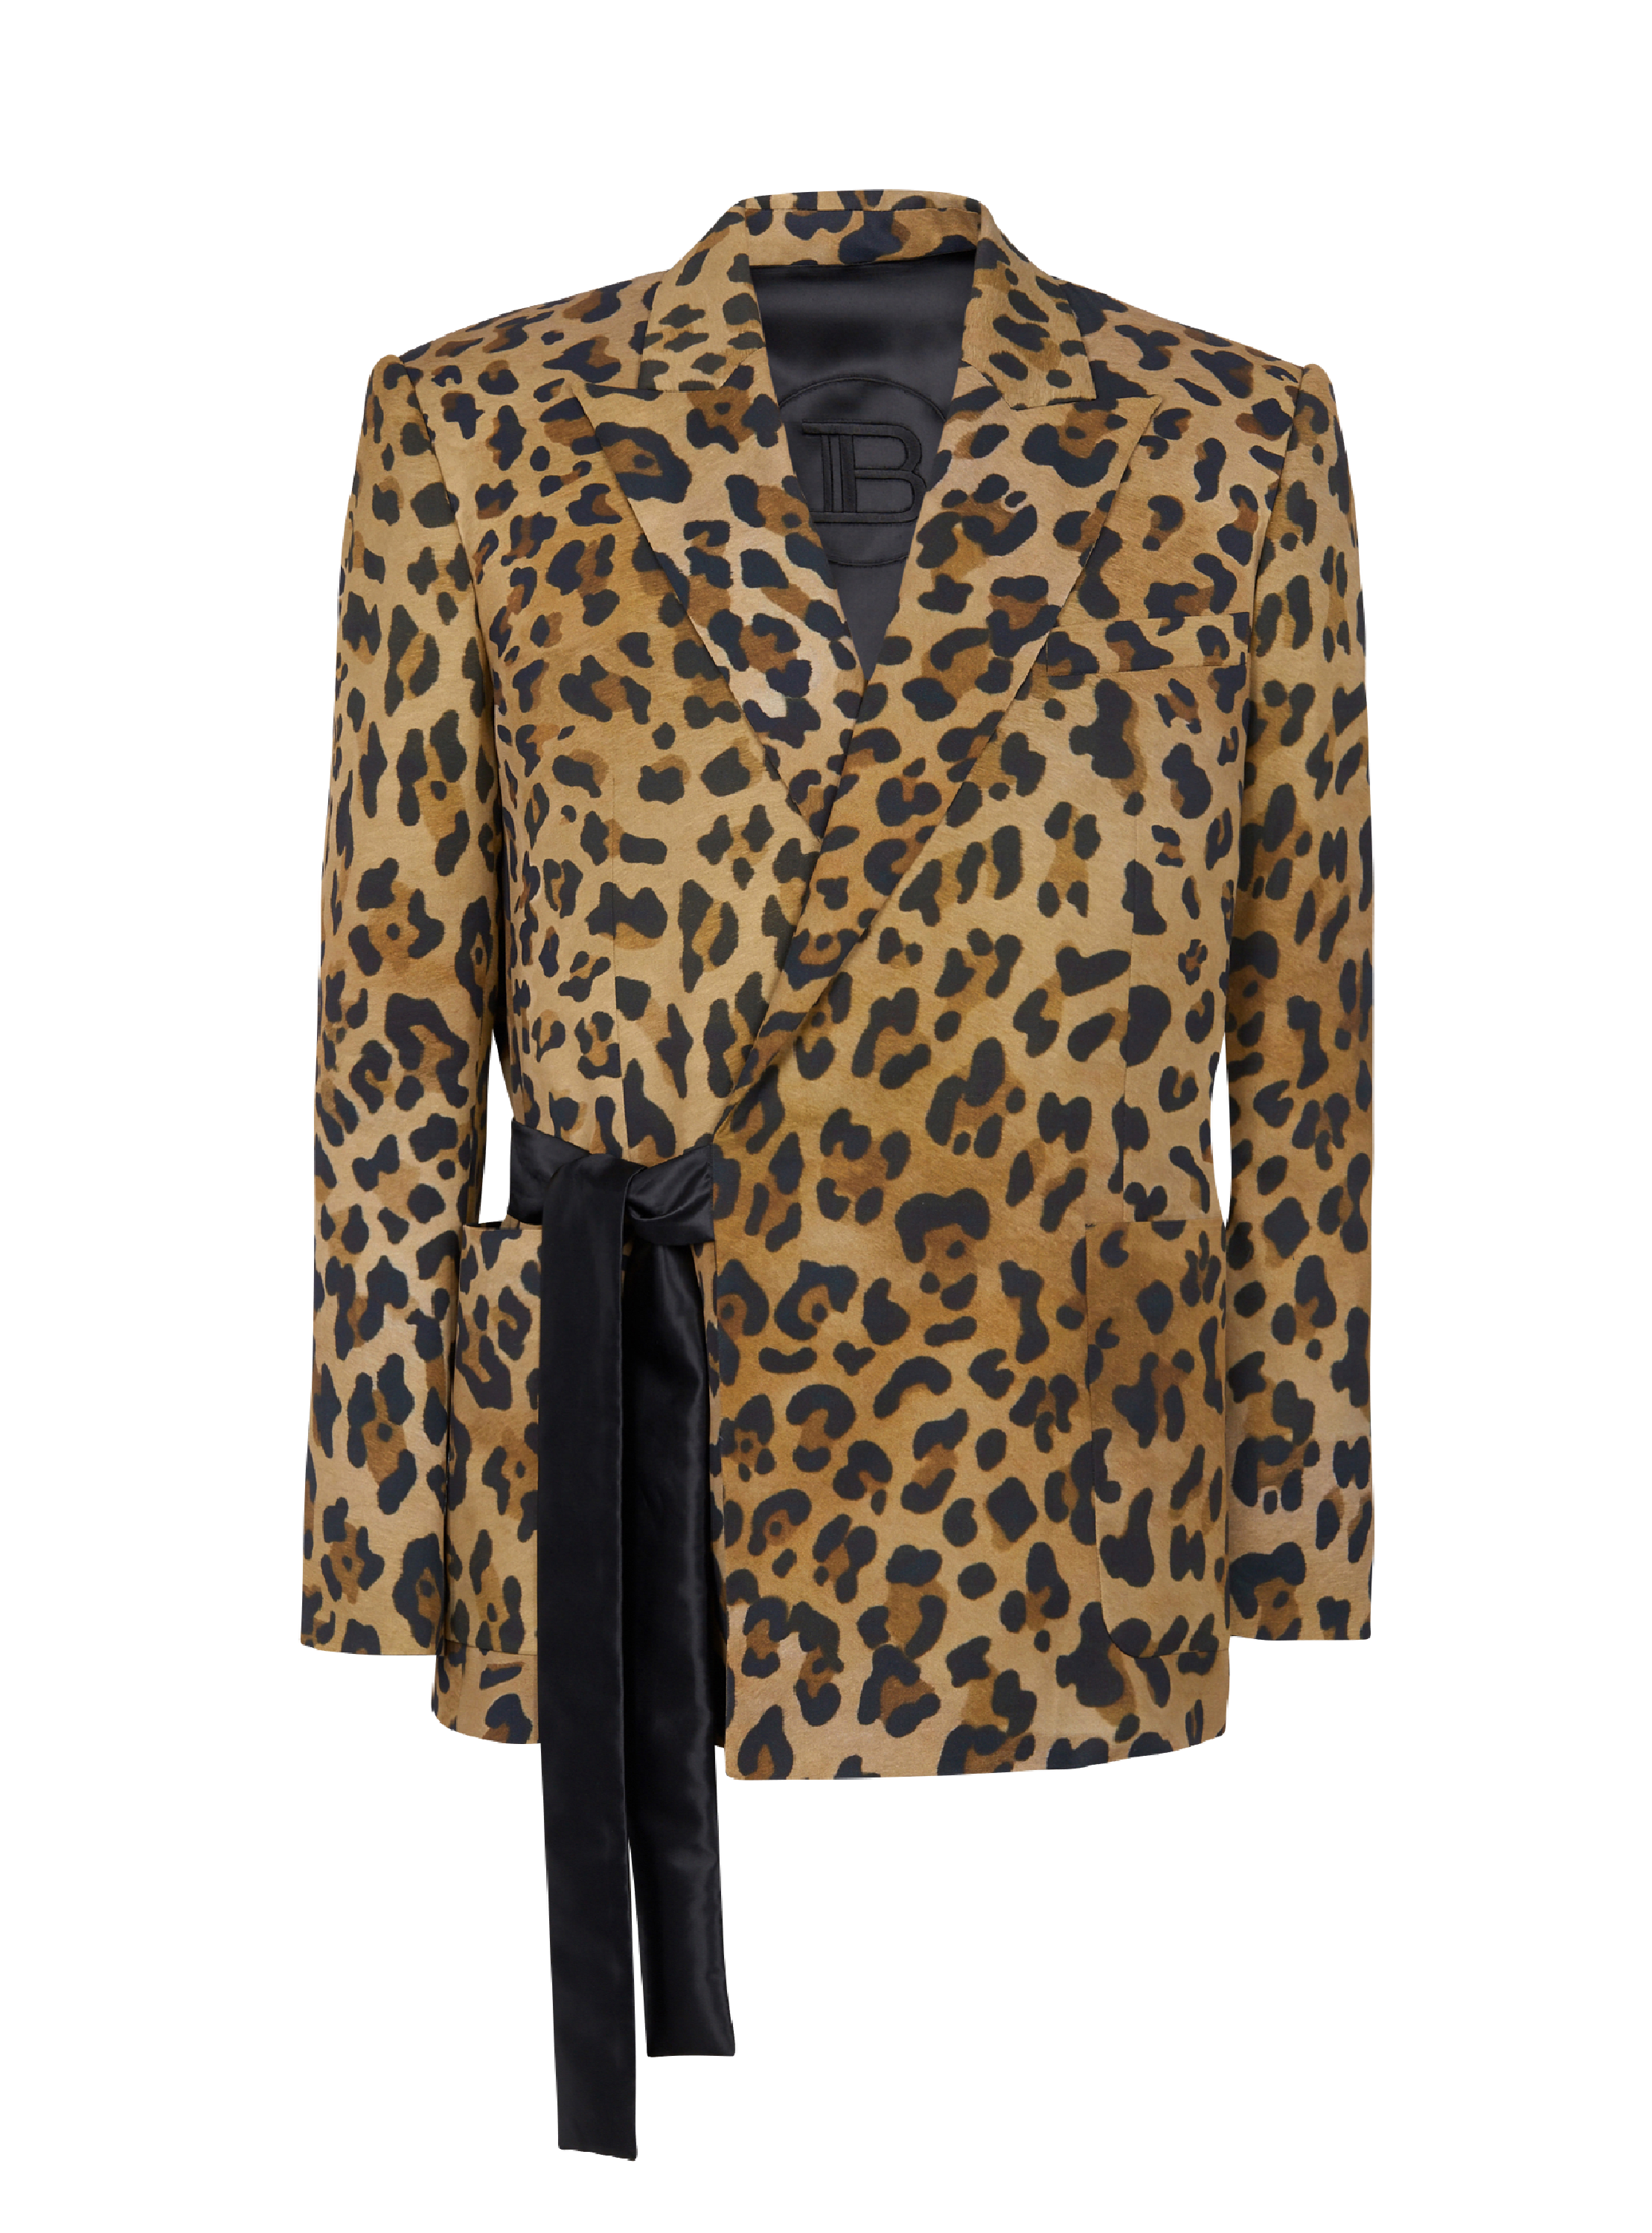 Asymmetrische Jacke mit Leopardenmuster, braun, hi-res